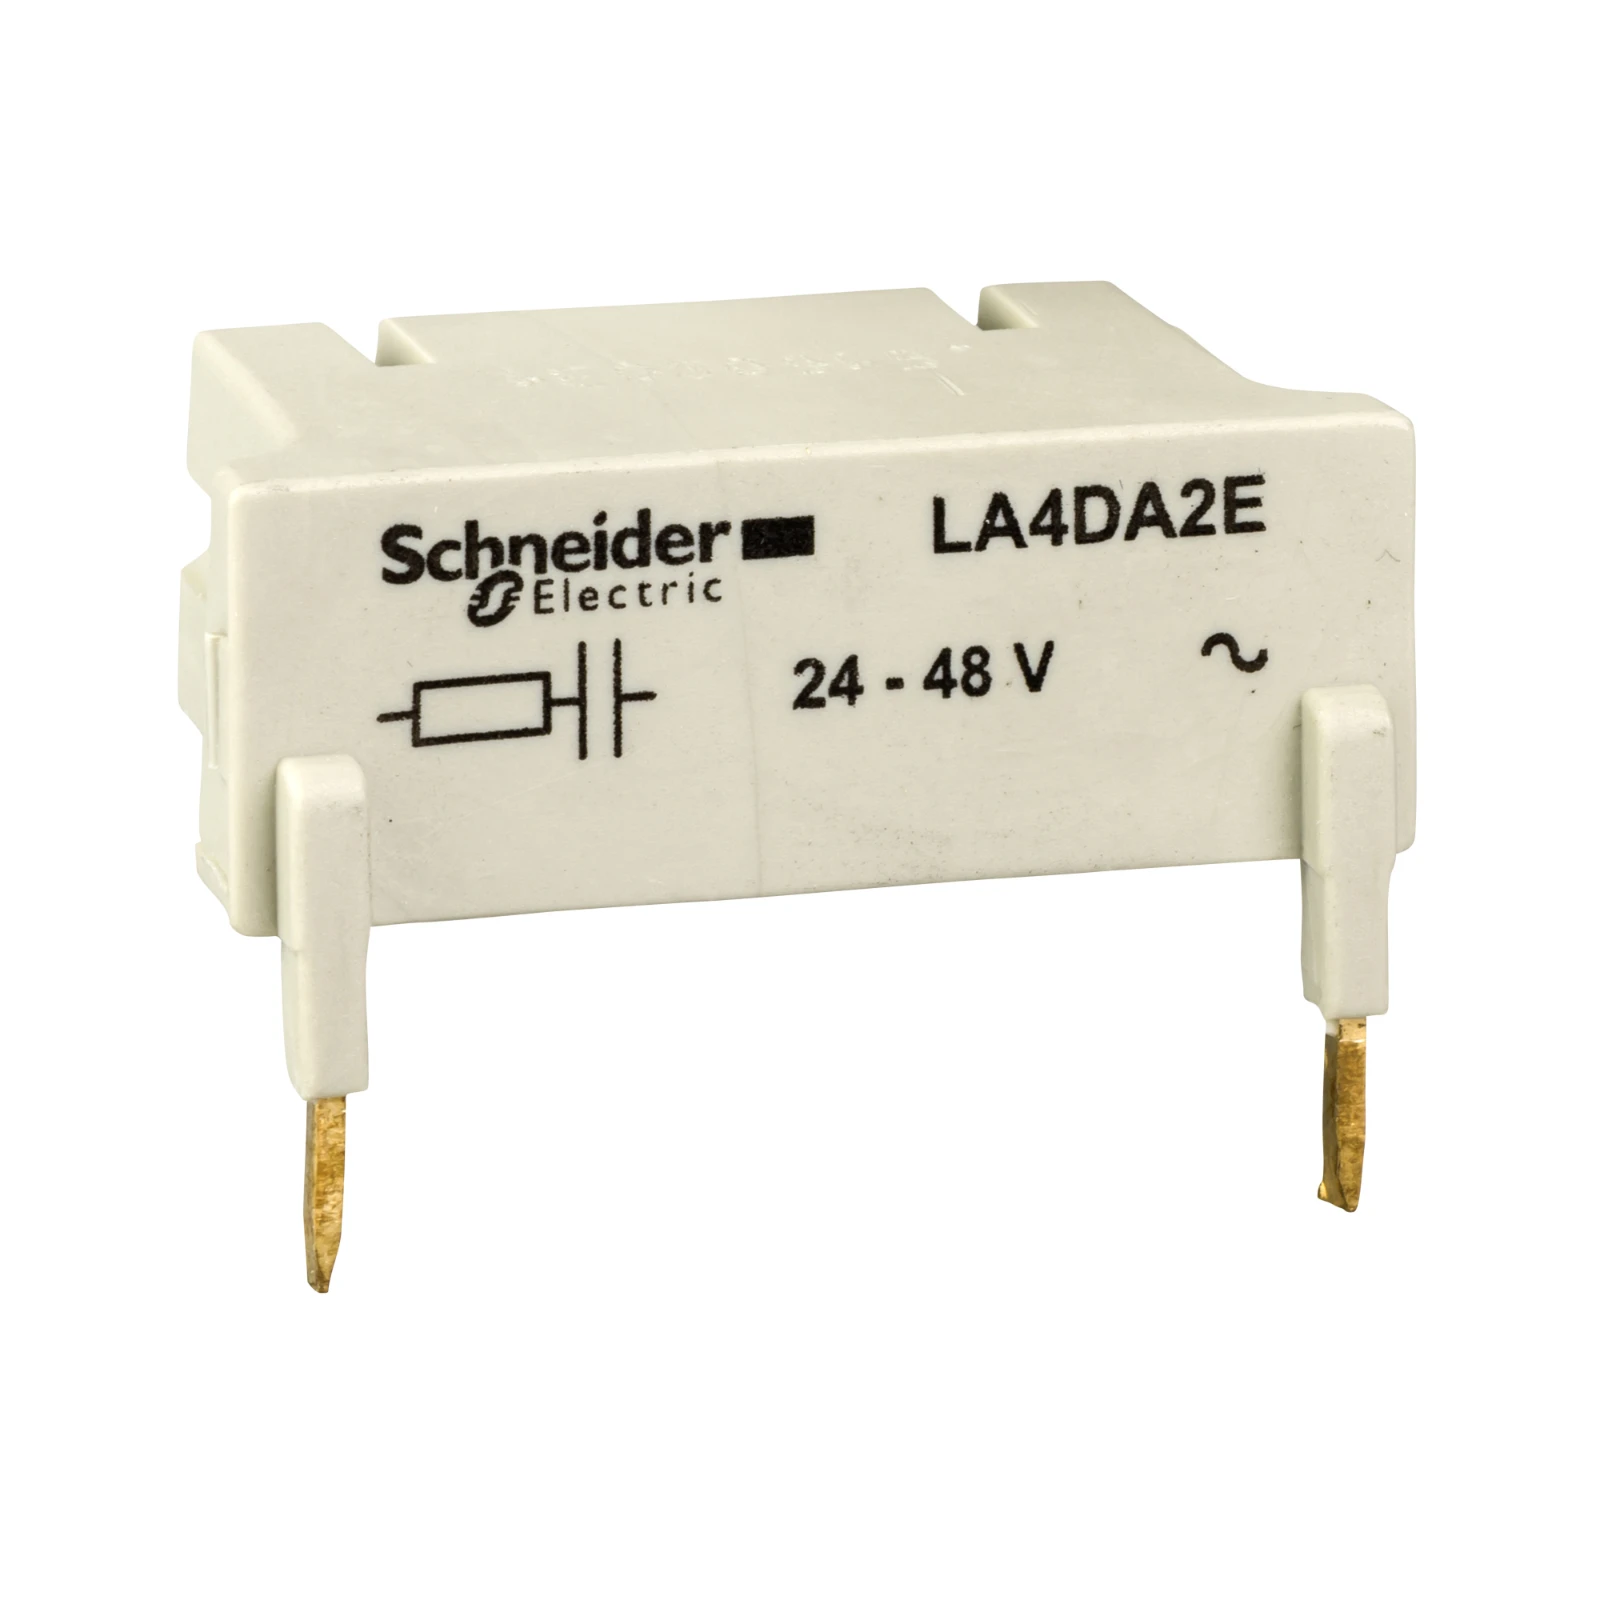 1041843 - Schneider Electric LA4DA2E